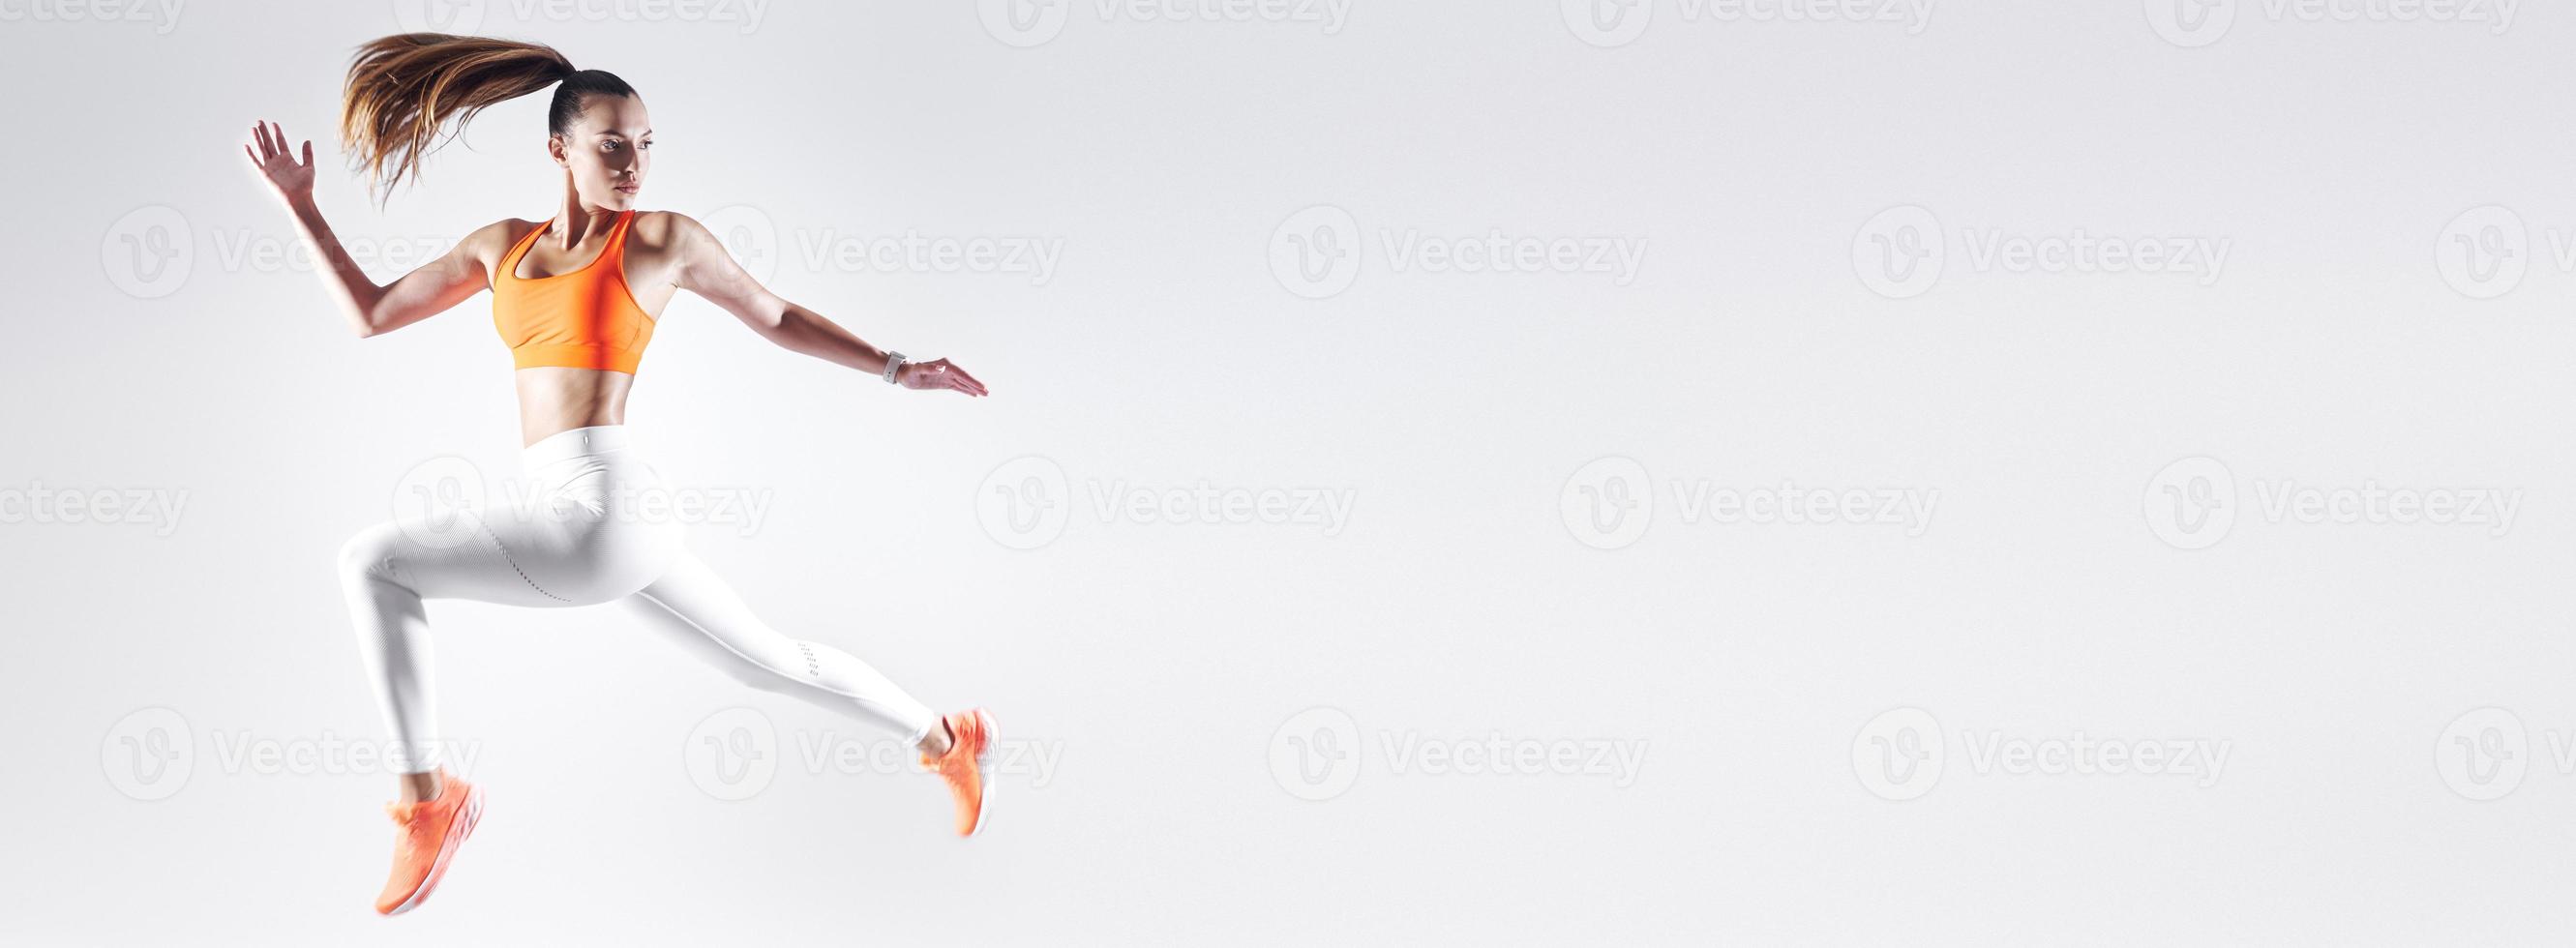 jovem confiante em roupas esportivas pulando contra fundo branco foto